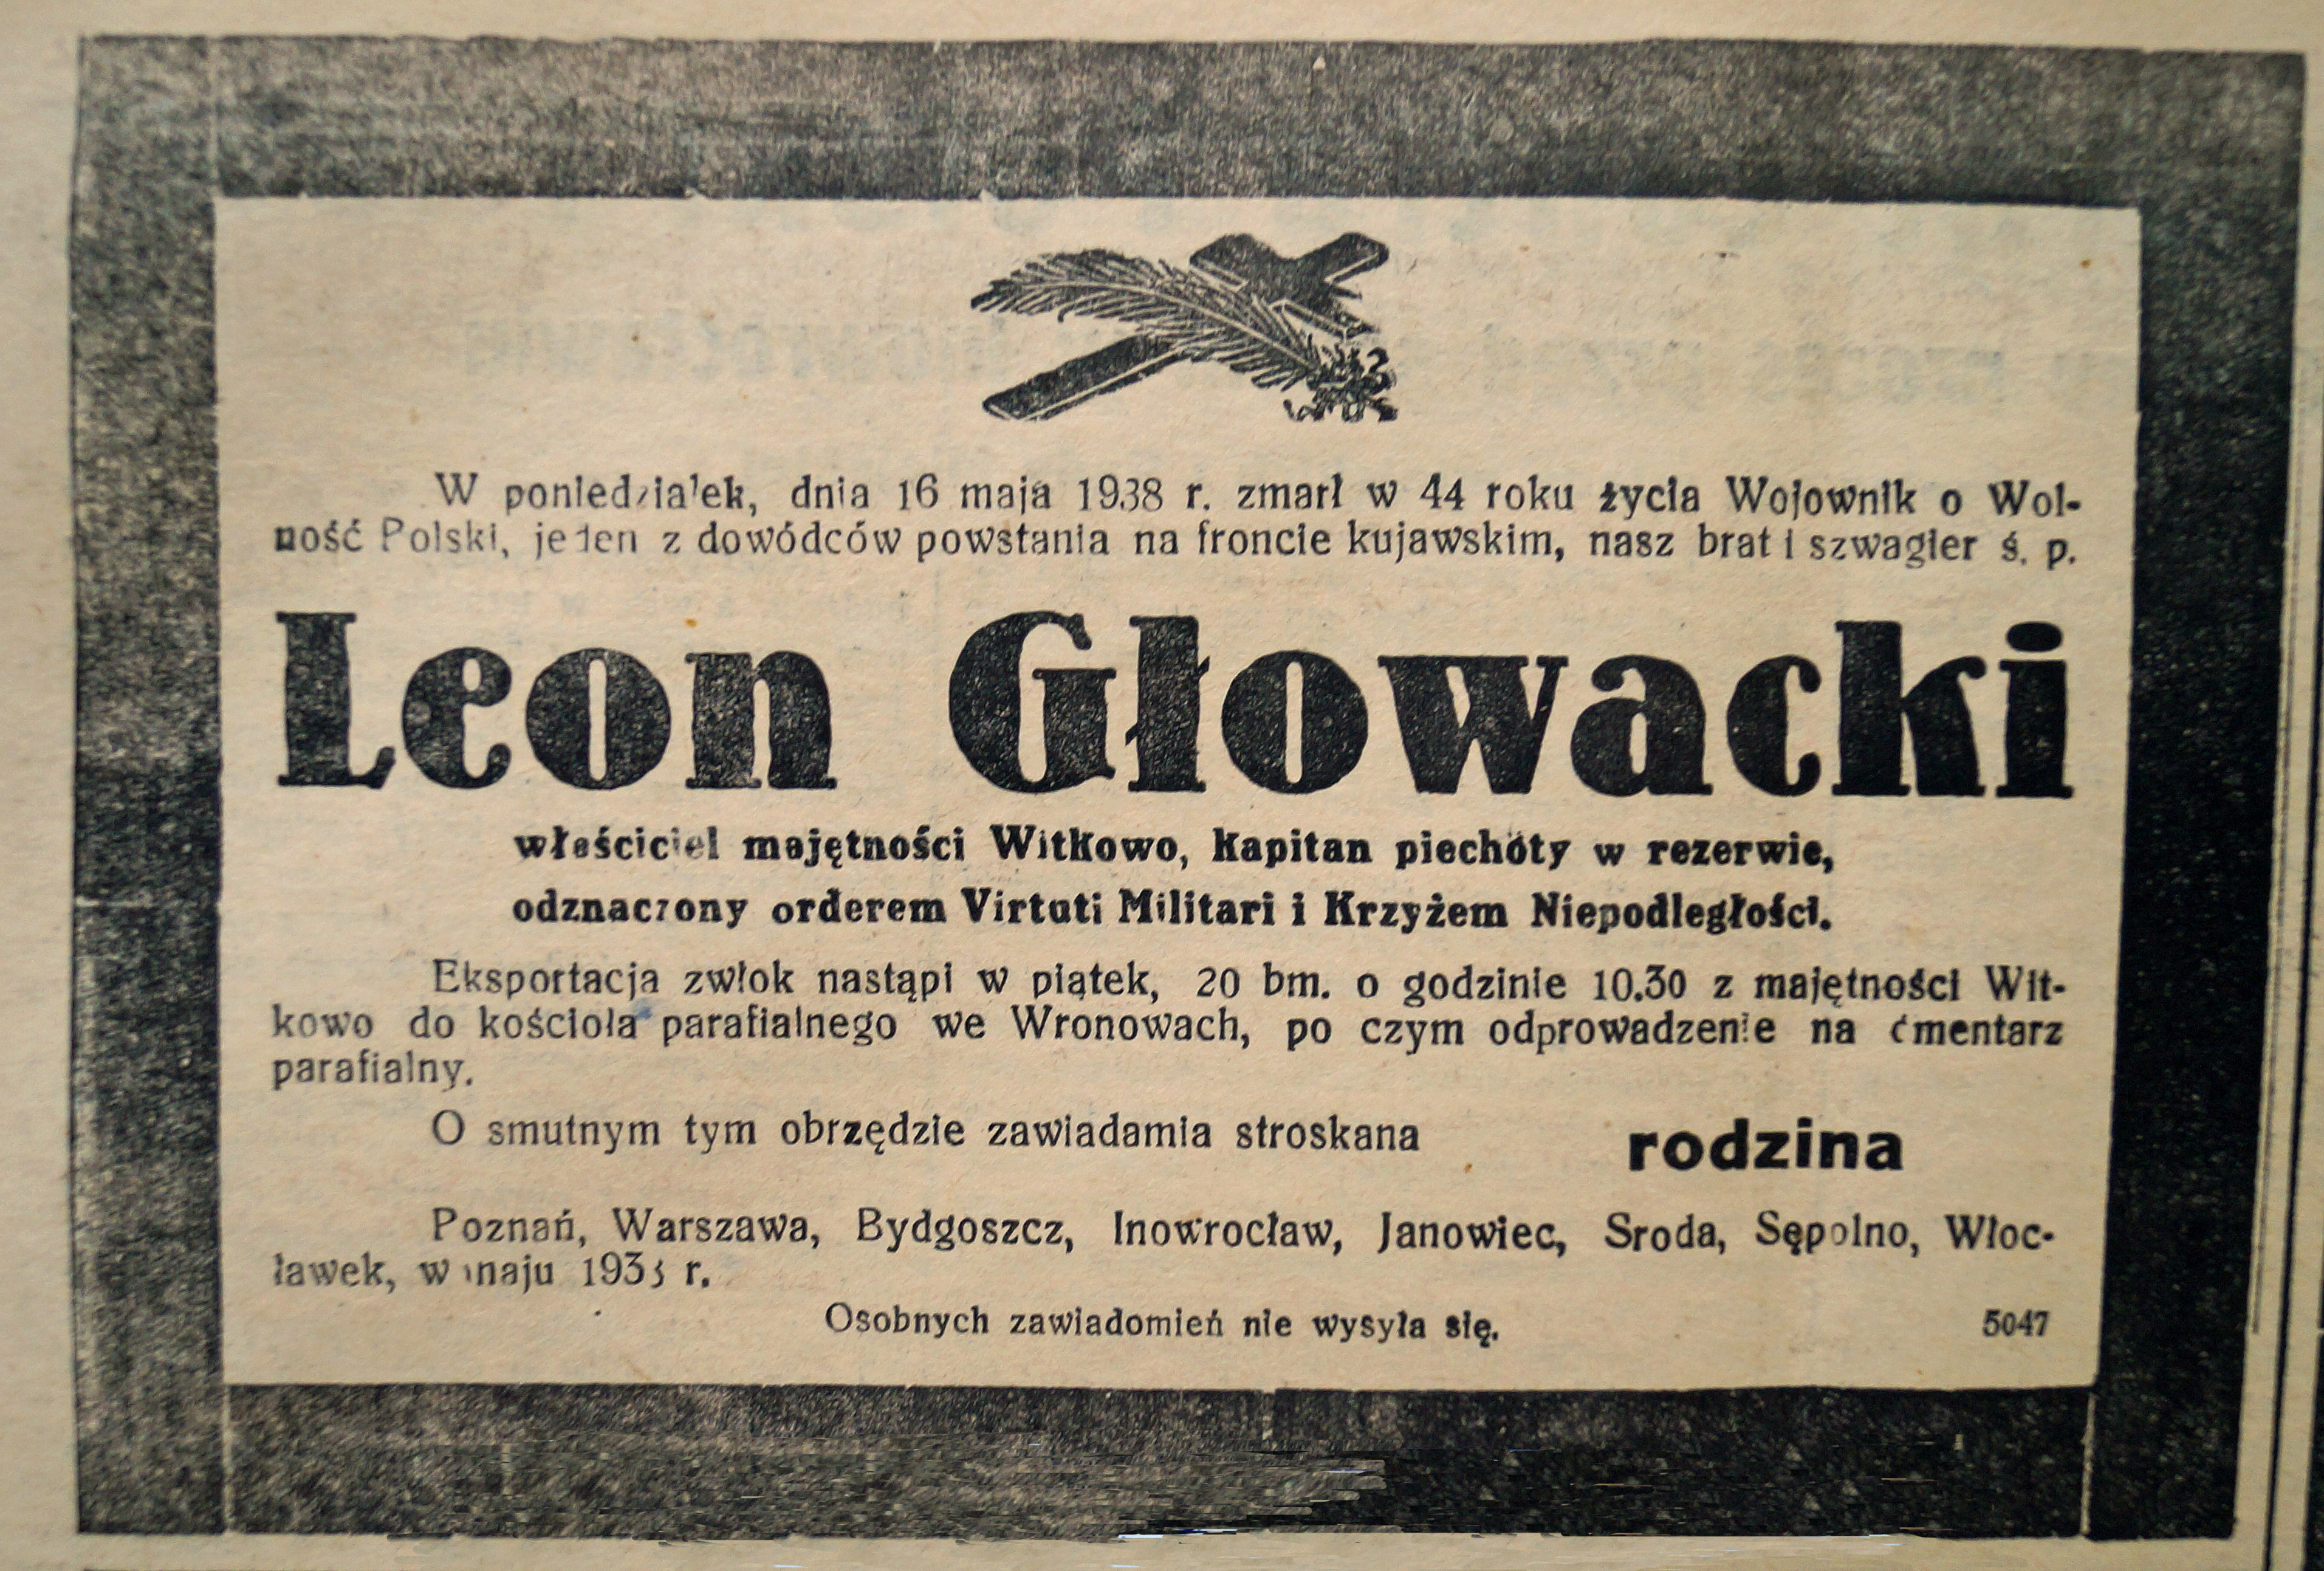 Nekrolog Leona Głowackiego zm. 16 V 1938 r. Źródło: "Dziennik Kujawski" z 19 V 1938 r.